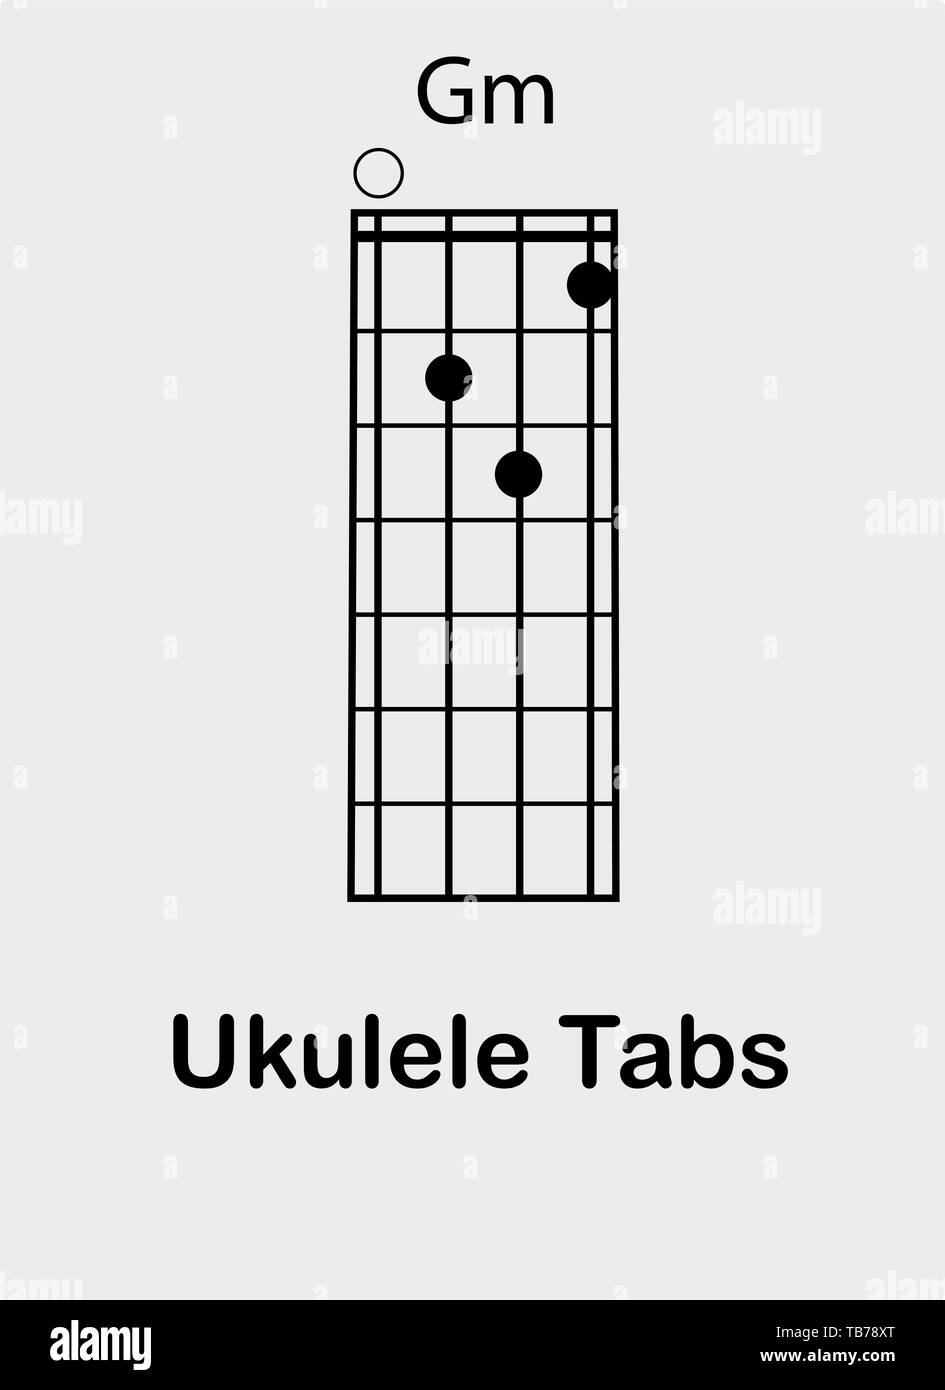 Ukulele tabulator with G chord, vector illustration Stock Image & Art - Alamy